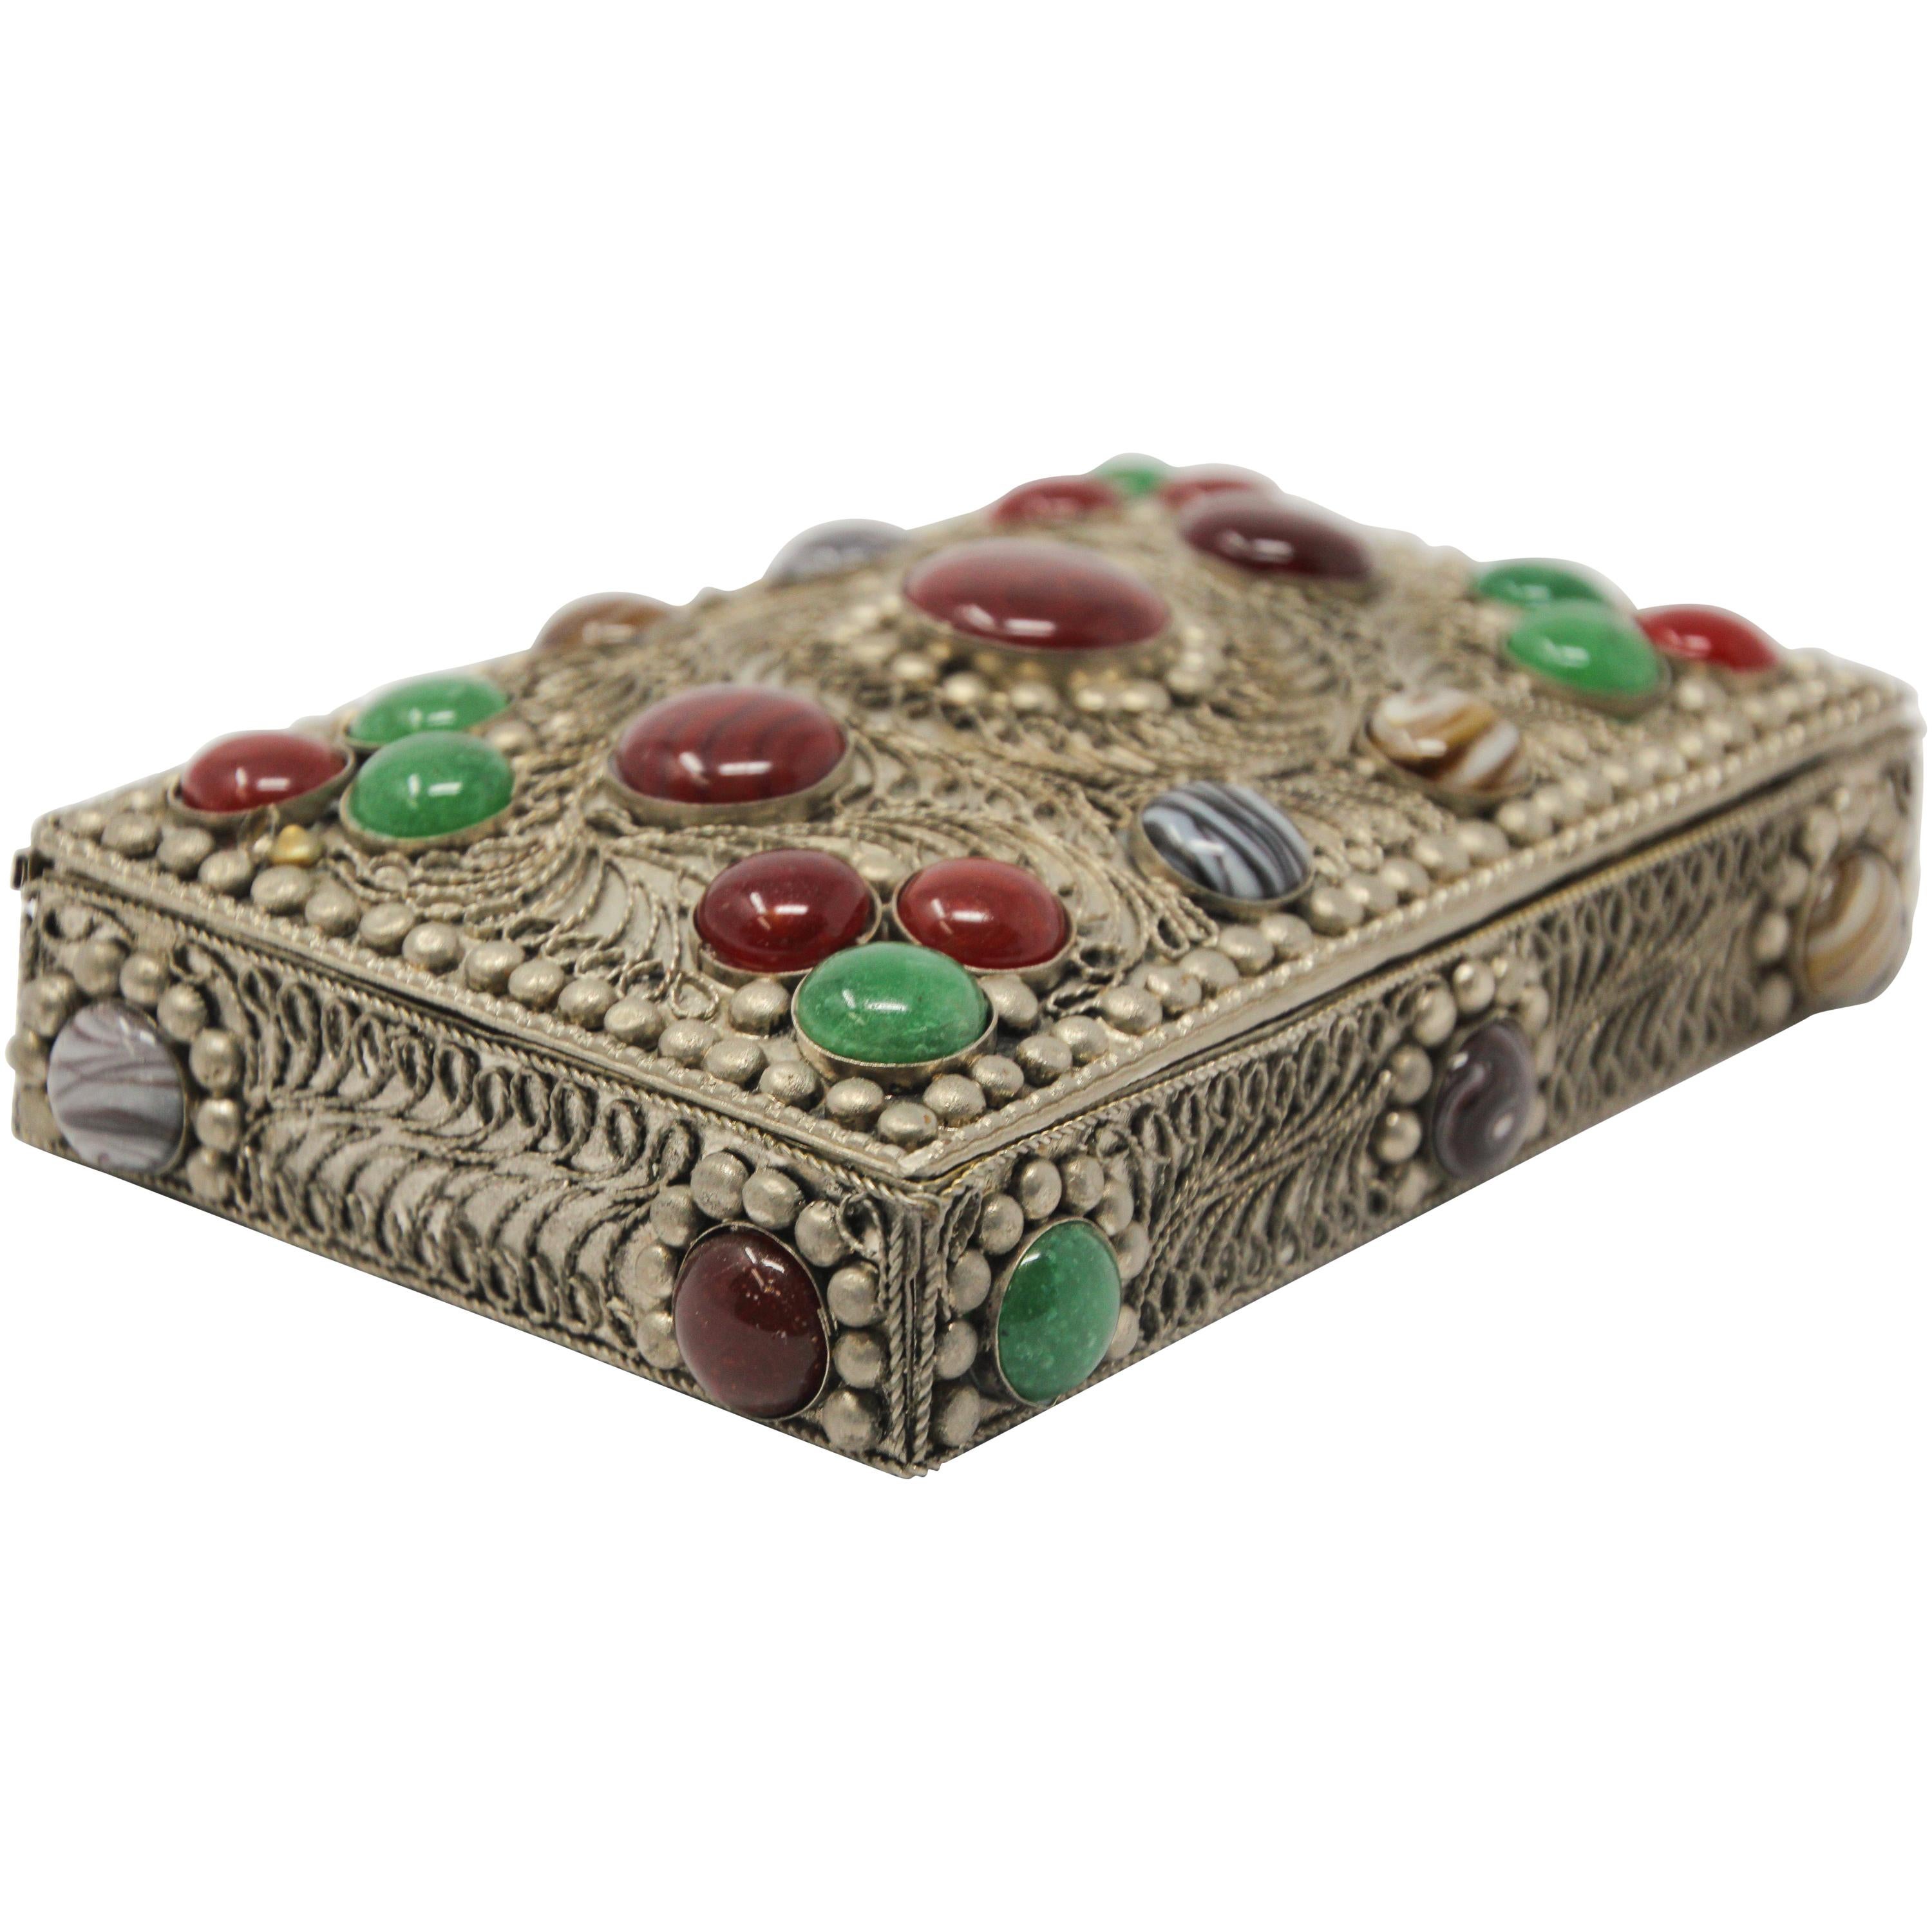 Vintage Agate Inlaid Moorish Jewelry Box